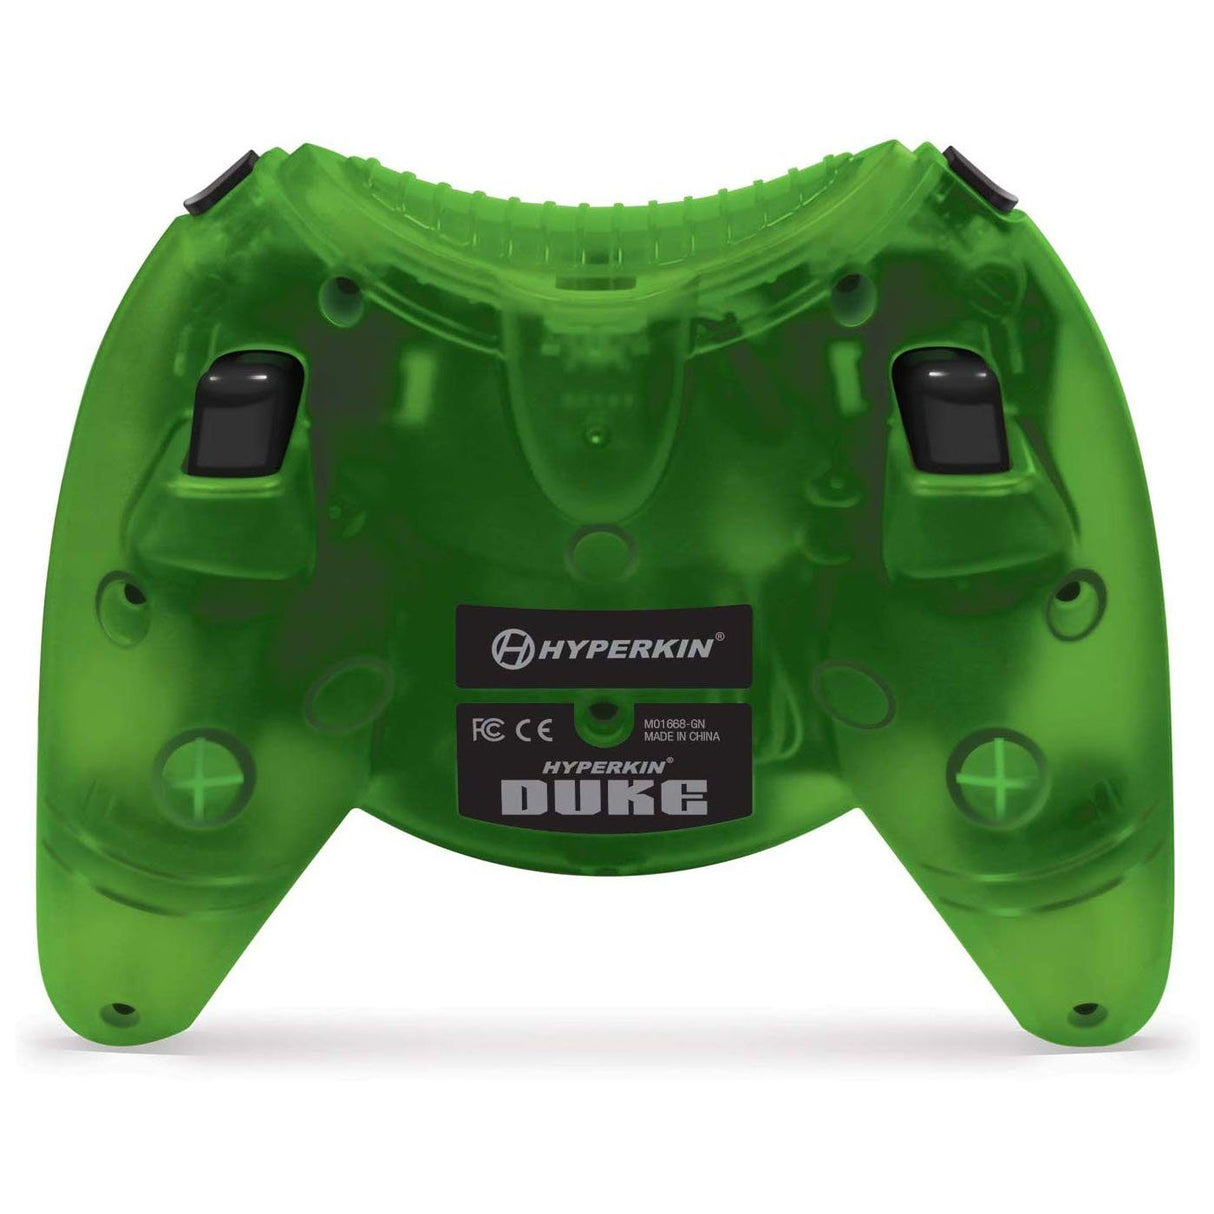 Hyperkin Duke Wired Controller for Xbox One/Windows 10 PC - Level UpHyperkinXBOX813048018216